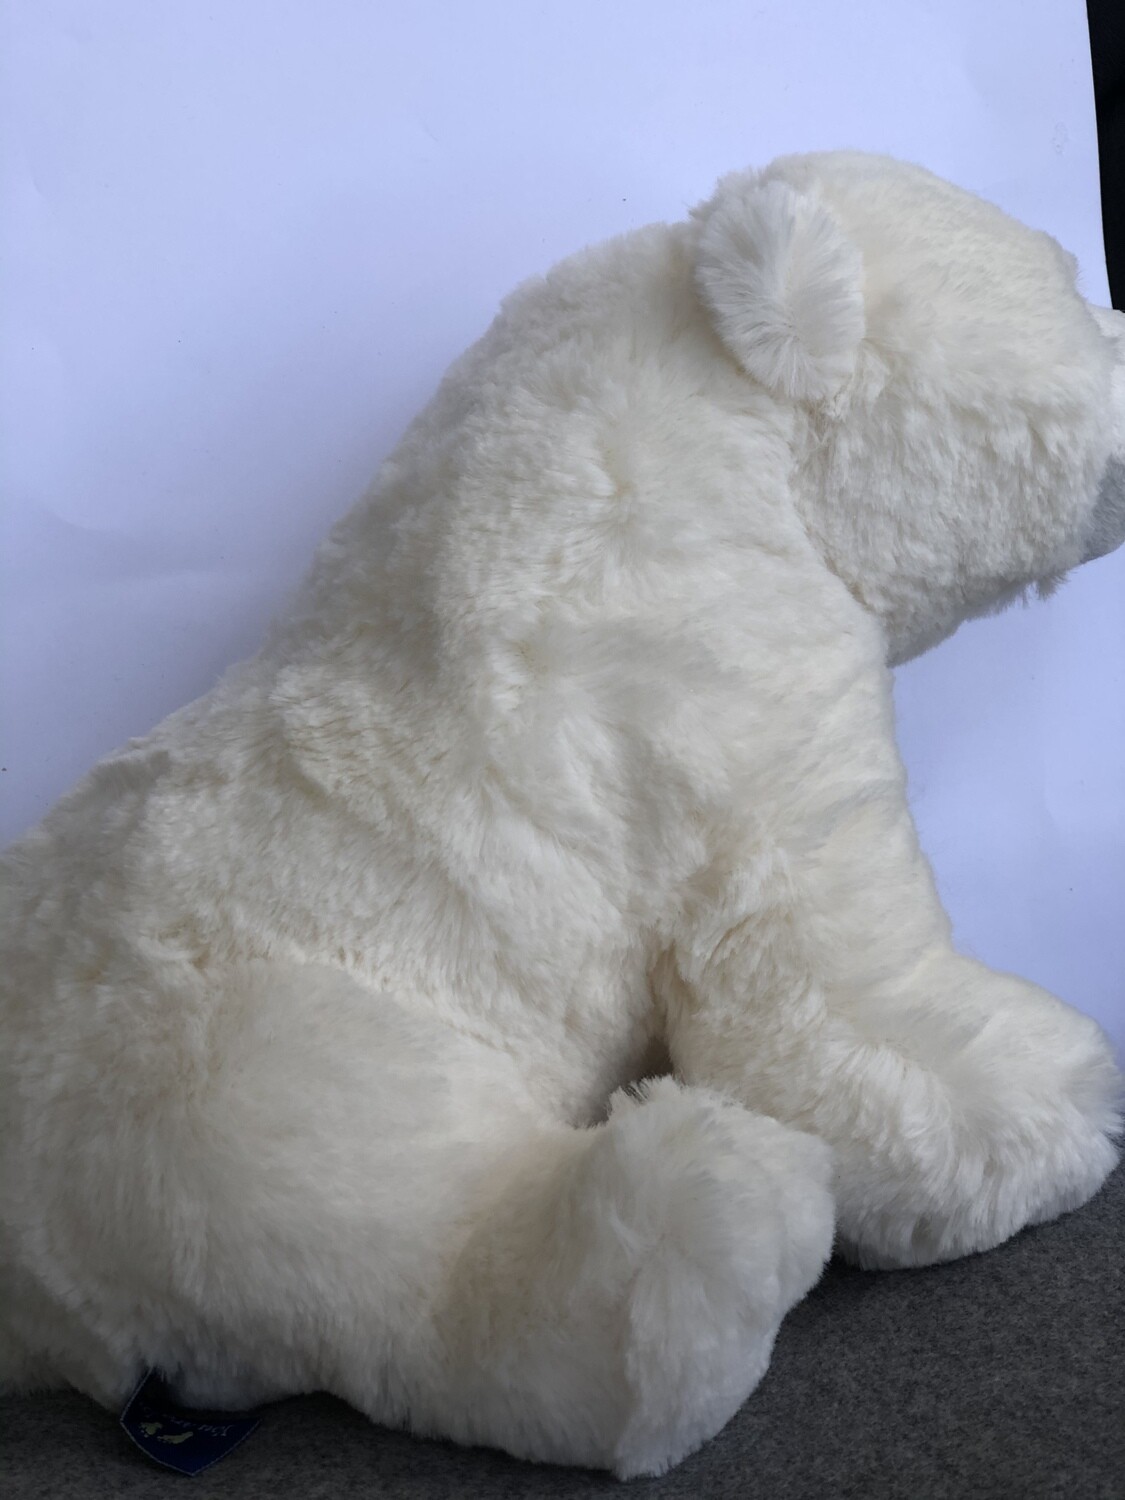 The Nancy Tillman Polar Bear